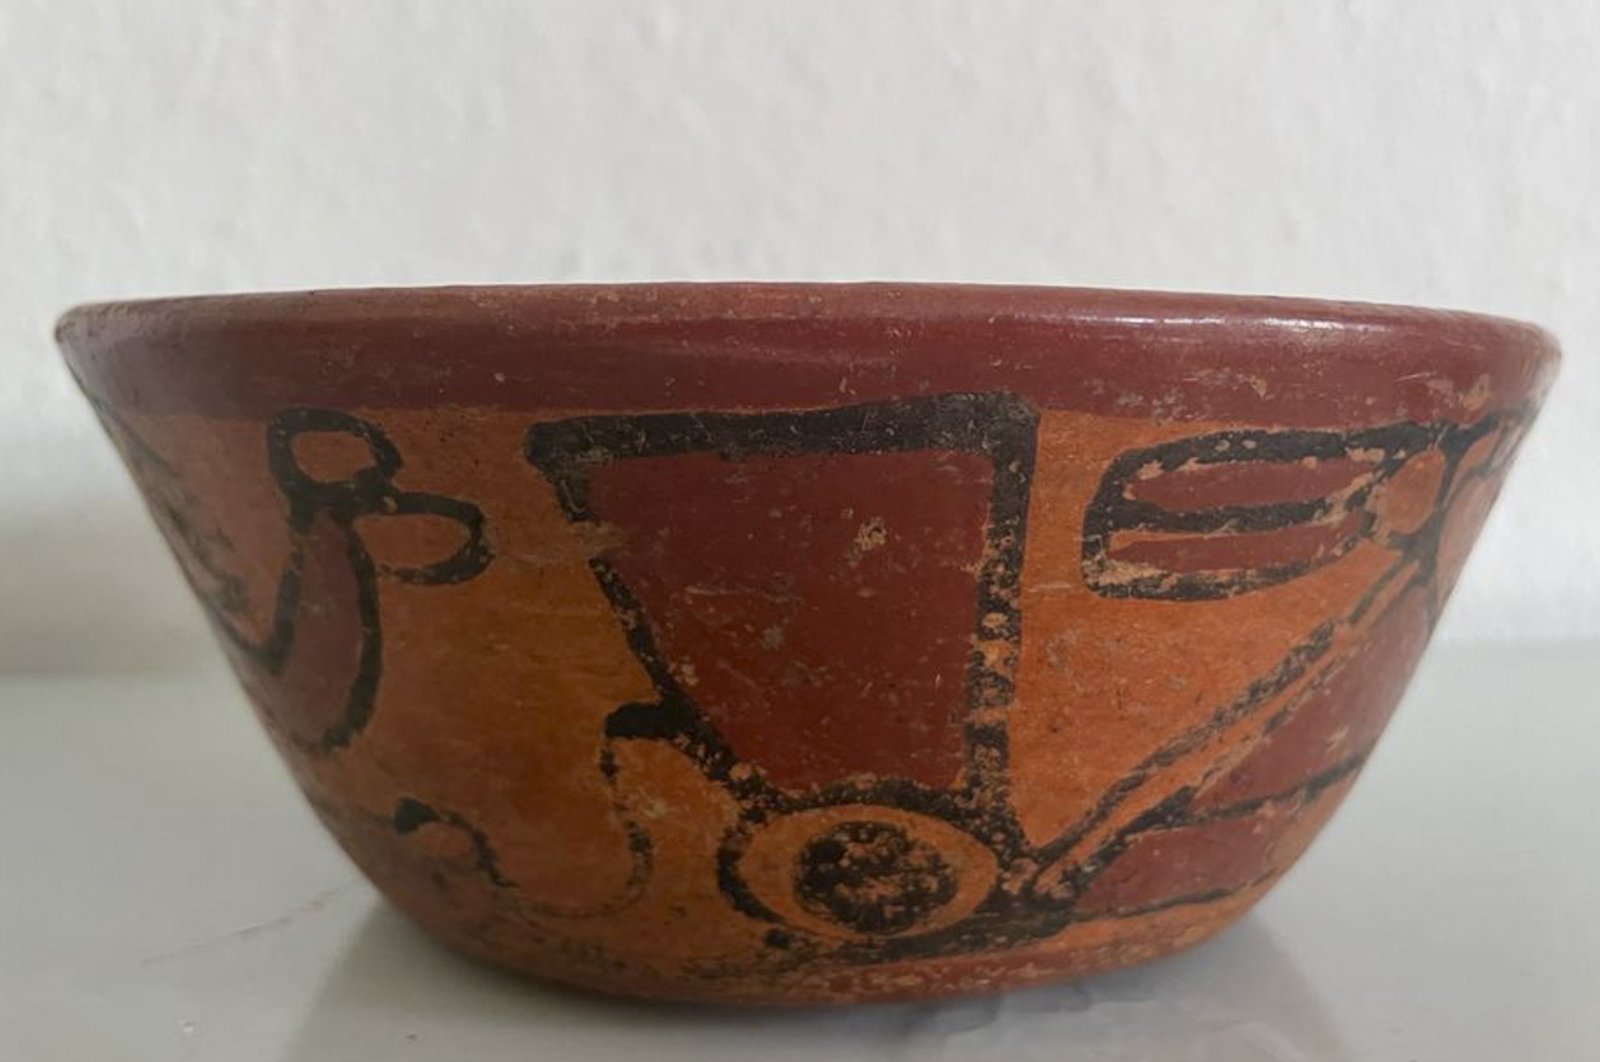 Guatemala menemukan 33 artefak pra-Columbus dari Jerman